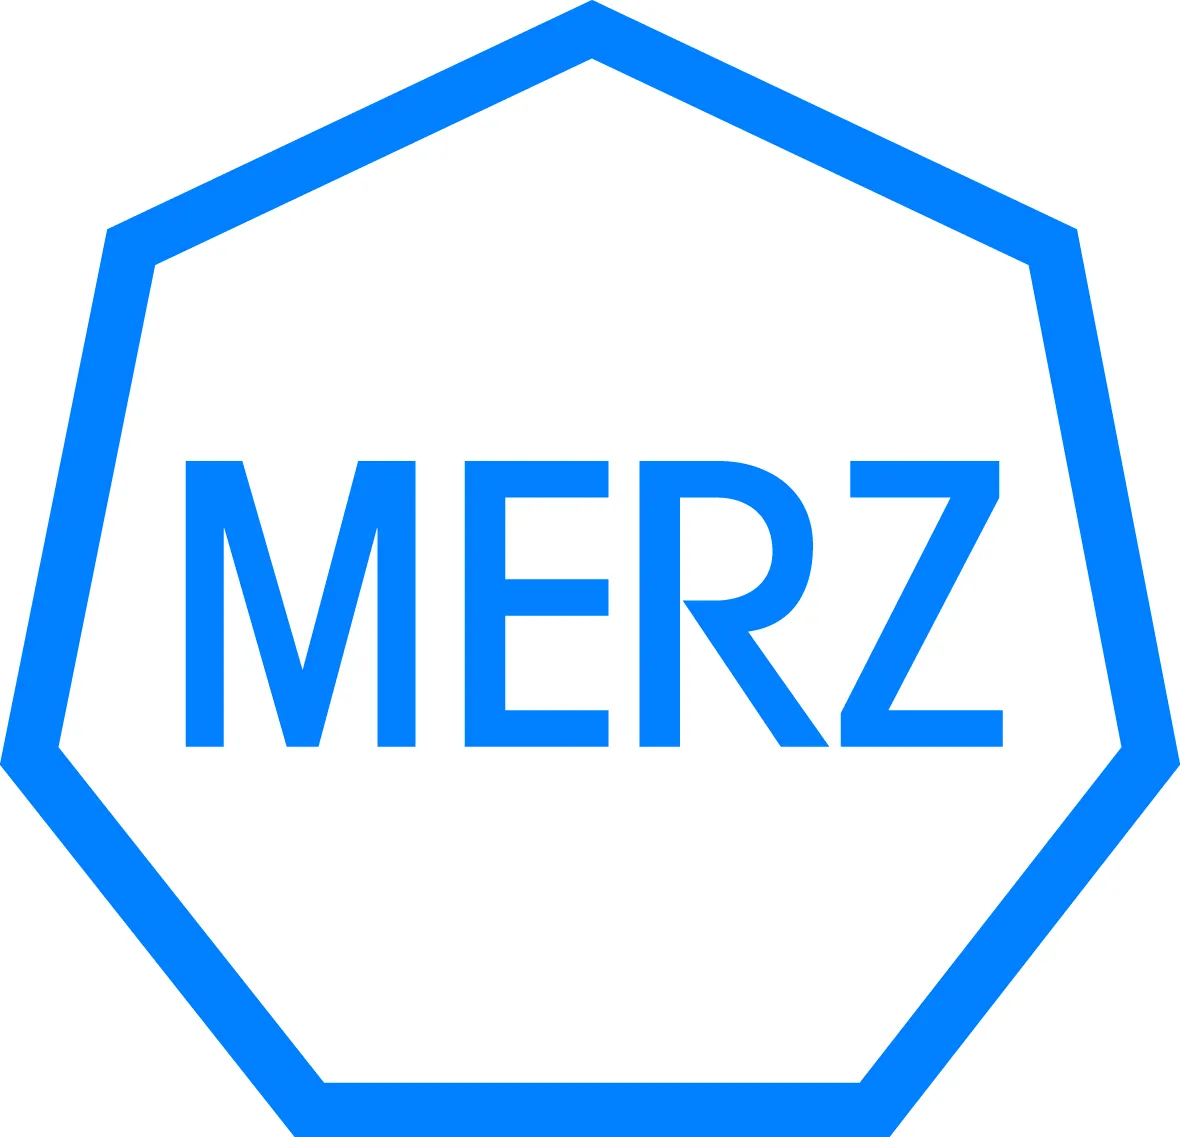 Merz Pharma GmbH & Co. KGaA